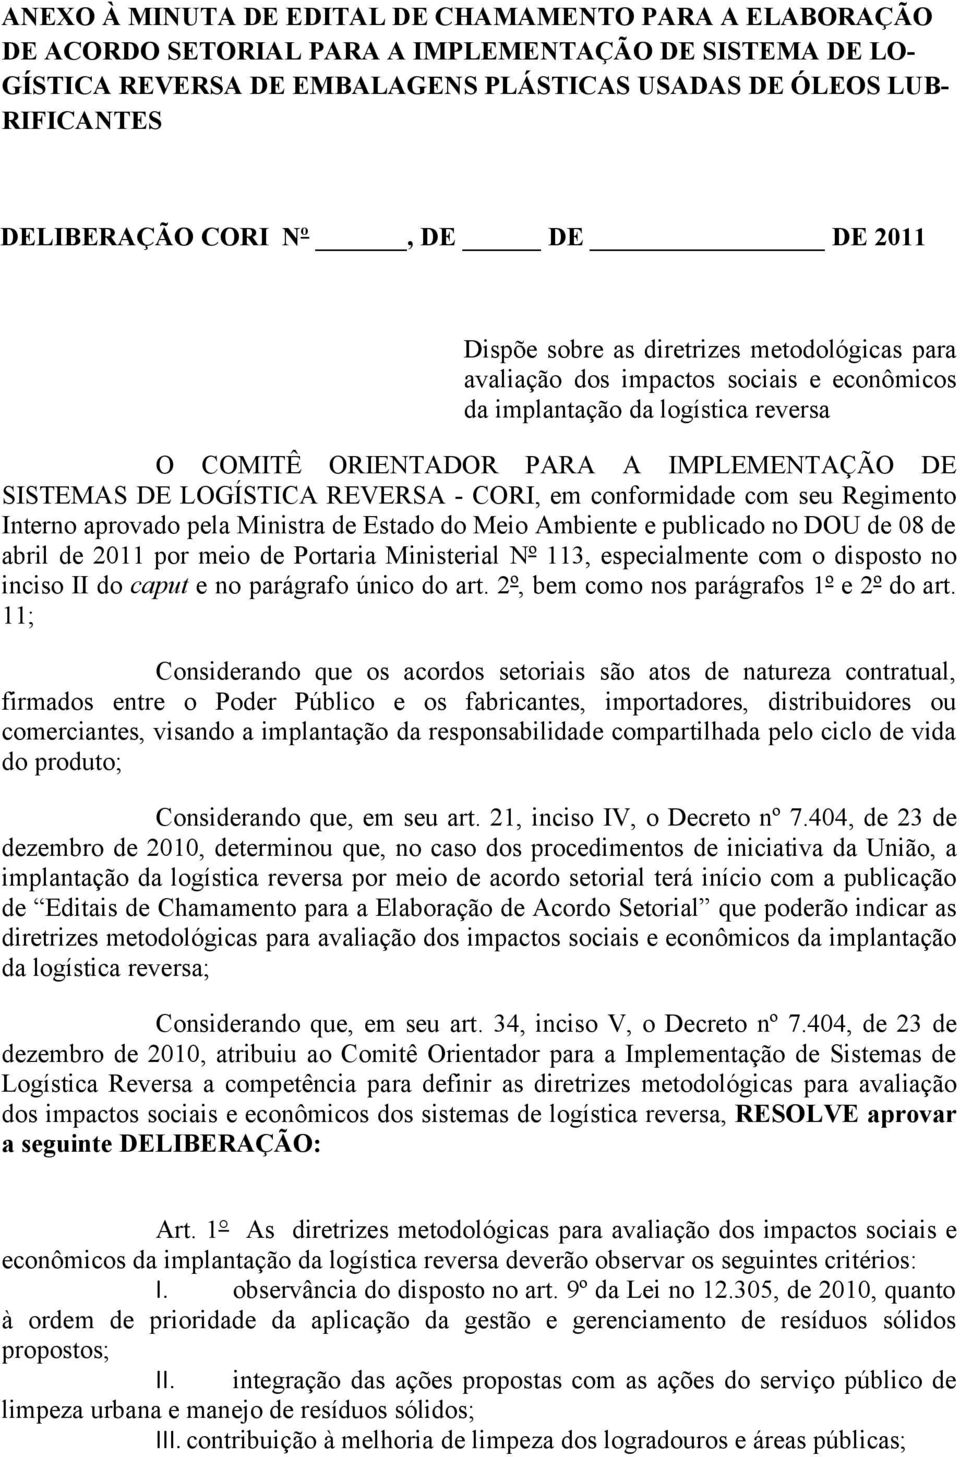 SISTEMAS DE LOGÍSTICA REVERSA - CORI, em conformidade com seu Regimento Interno aprovado pela Ministra de Estado do Meio Ambiente e publicado no DOU de 08 de abril de 2011 por meio de Portaria